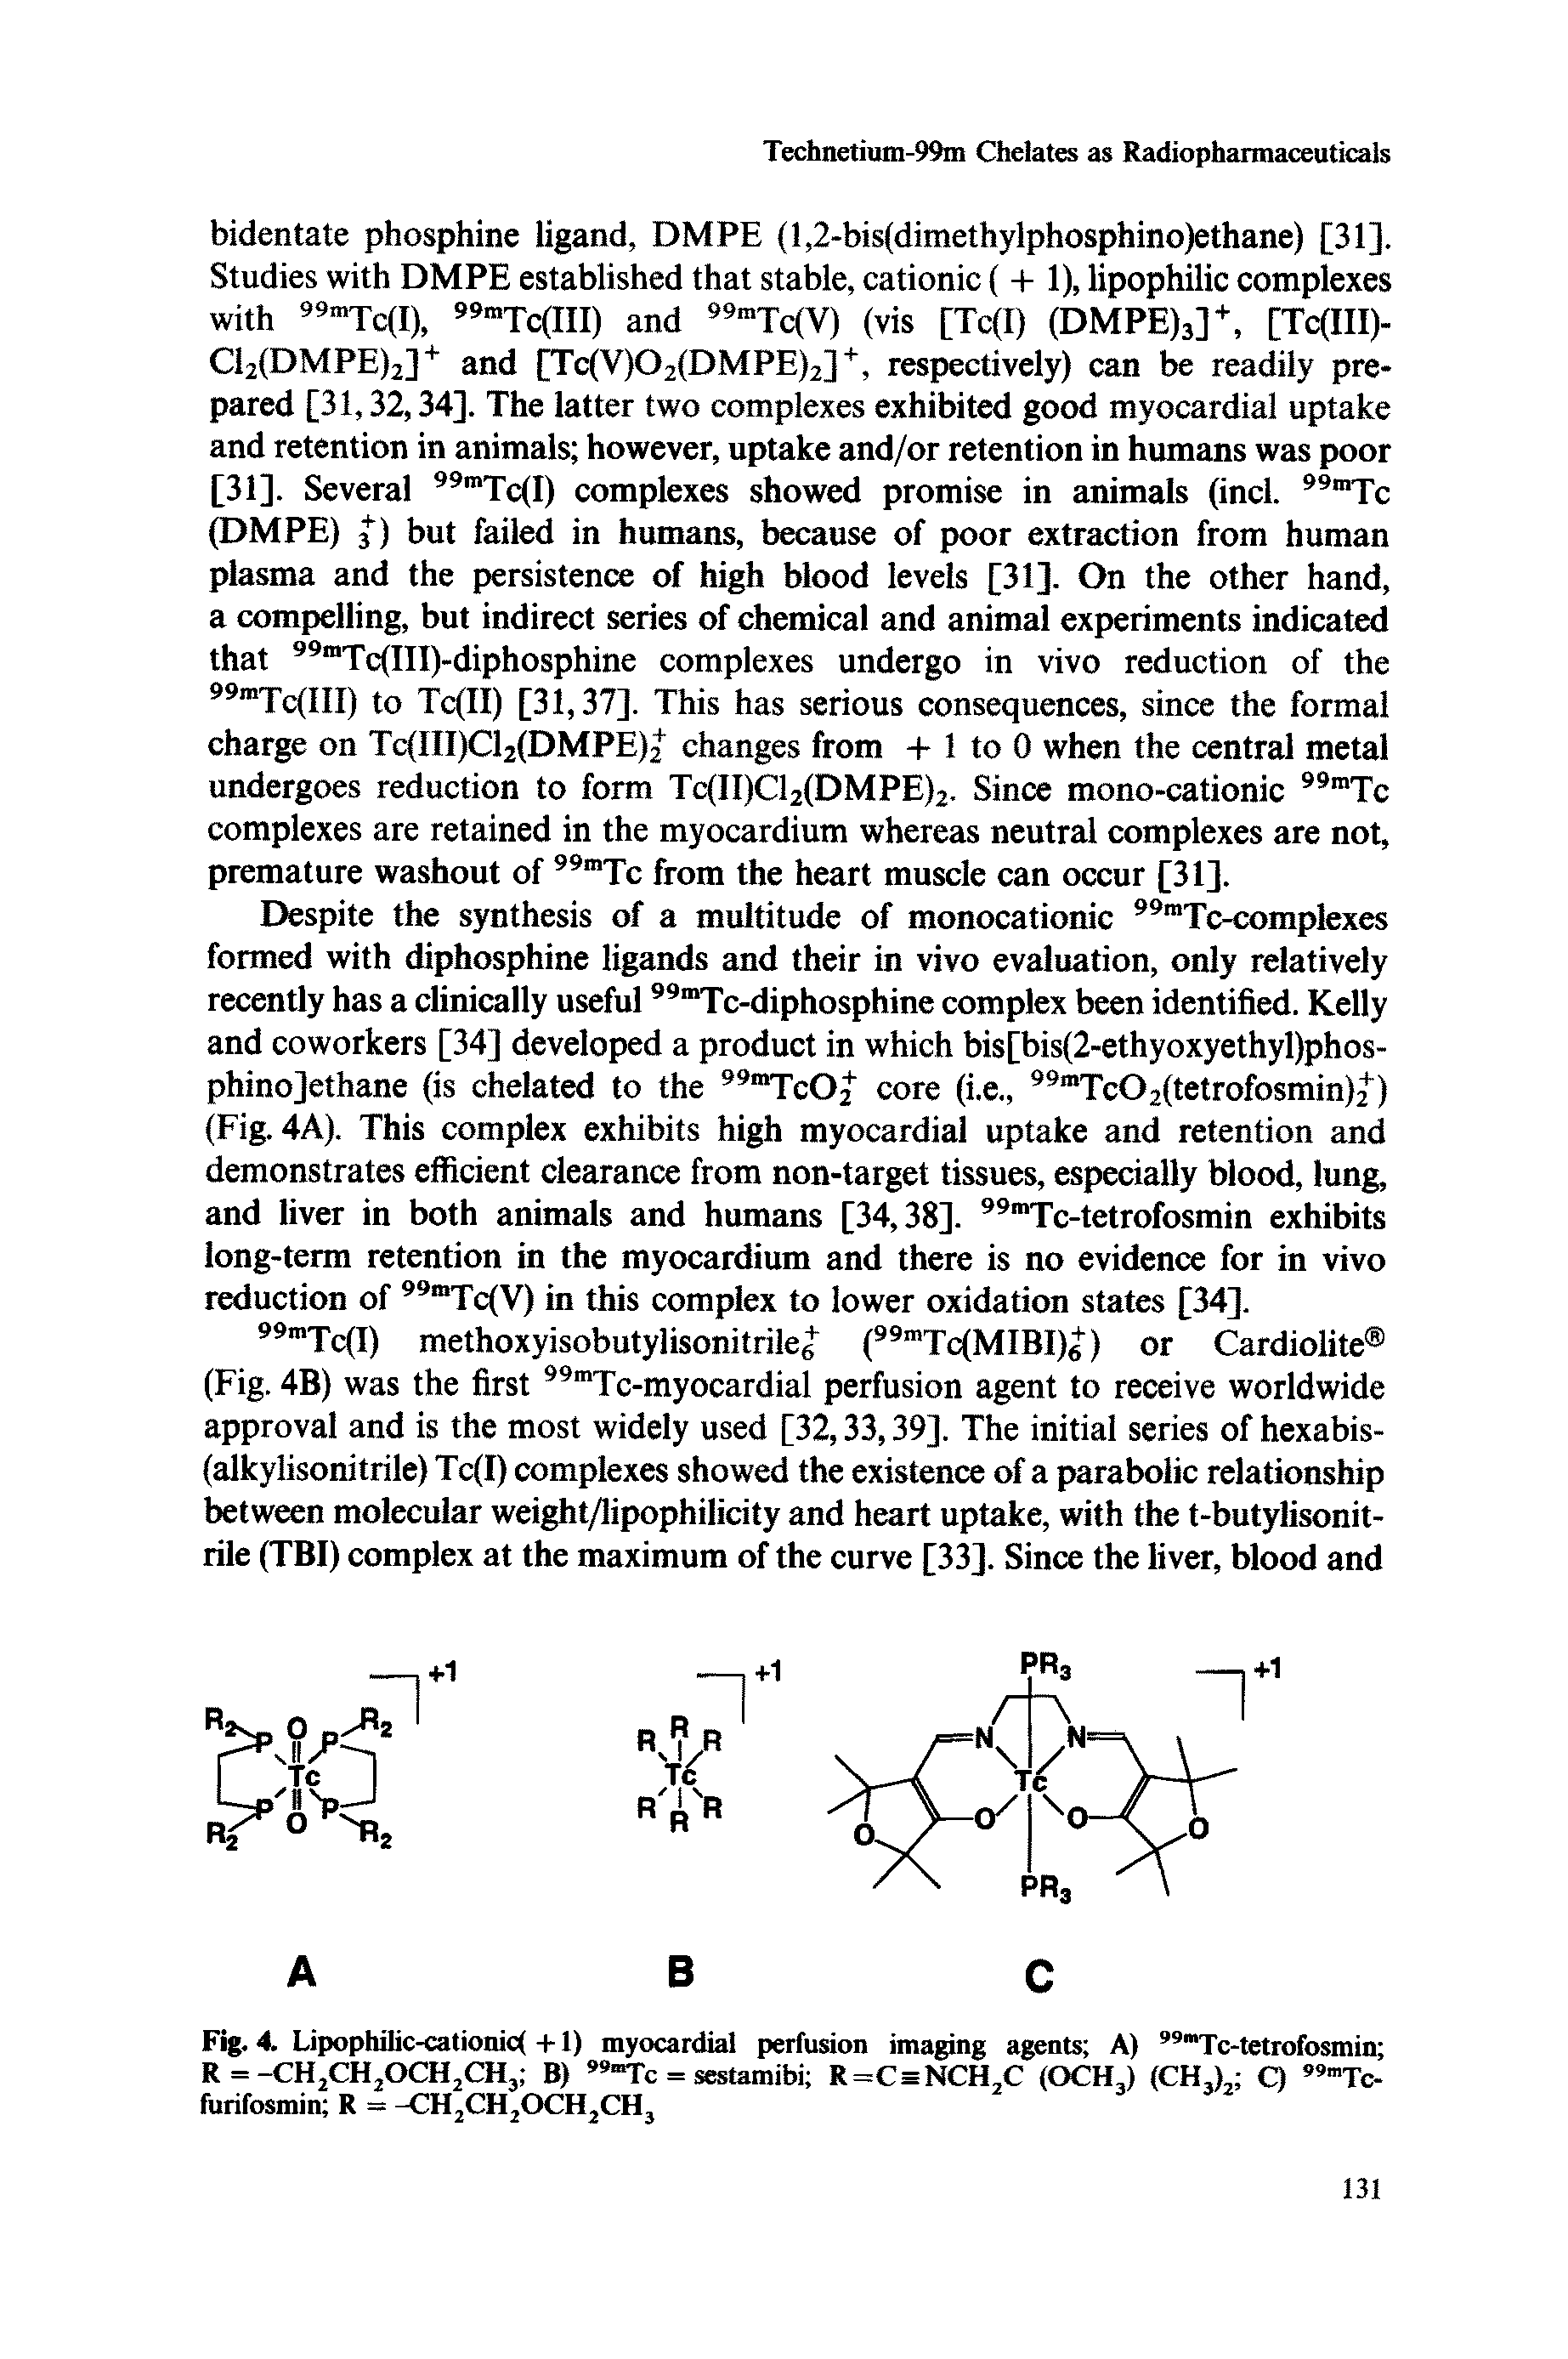 Fig. 4. Lipophilic-cationic( +1) myocardial perfusion imaging agents A) 99mTc-tetrofosmin R = -CH2CH,0CH,CH3 B), 9"Tc = sestamibi R=C=NCH,C (OCHJ (CH,), Q 99mTc-furifosmin R = -CH2CH2OCH2CH3...